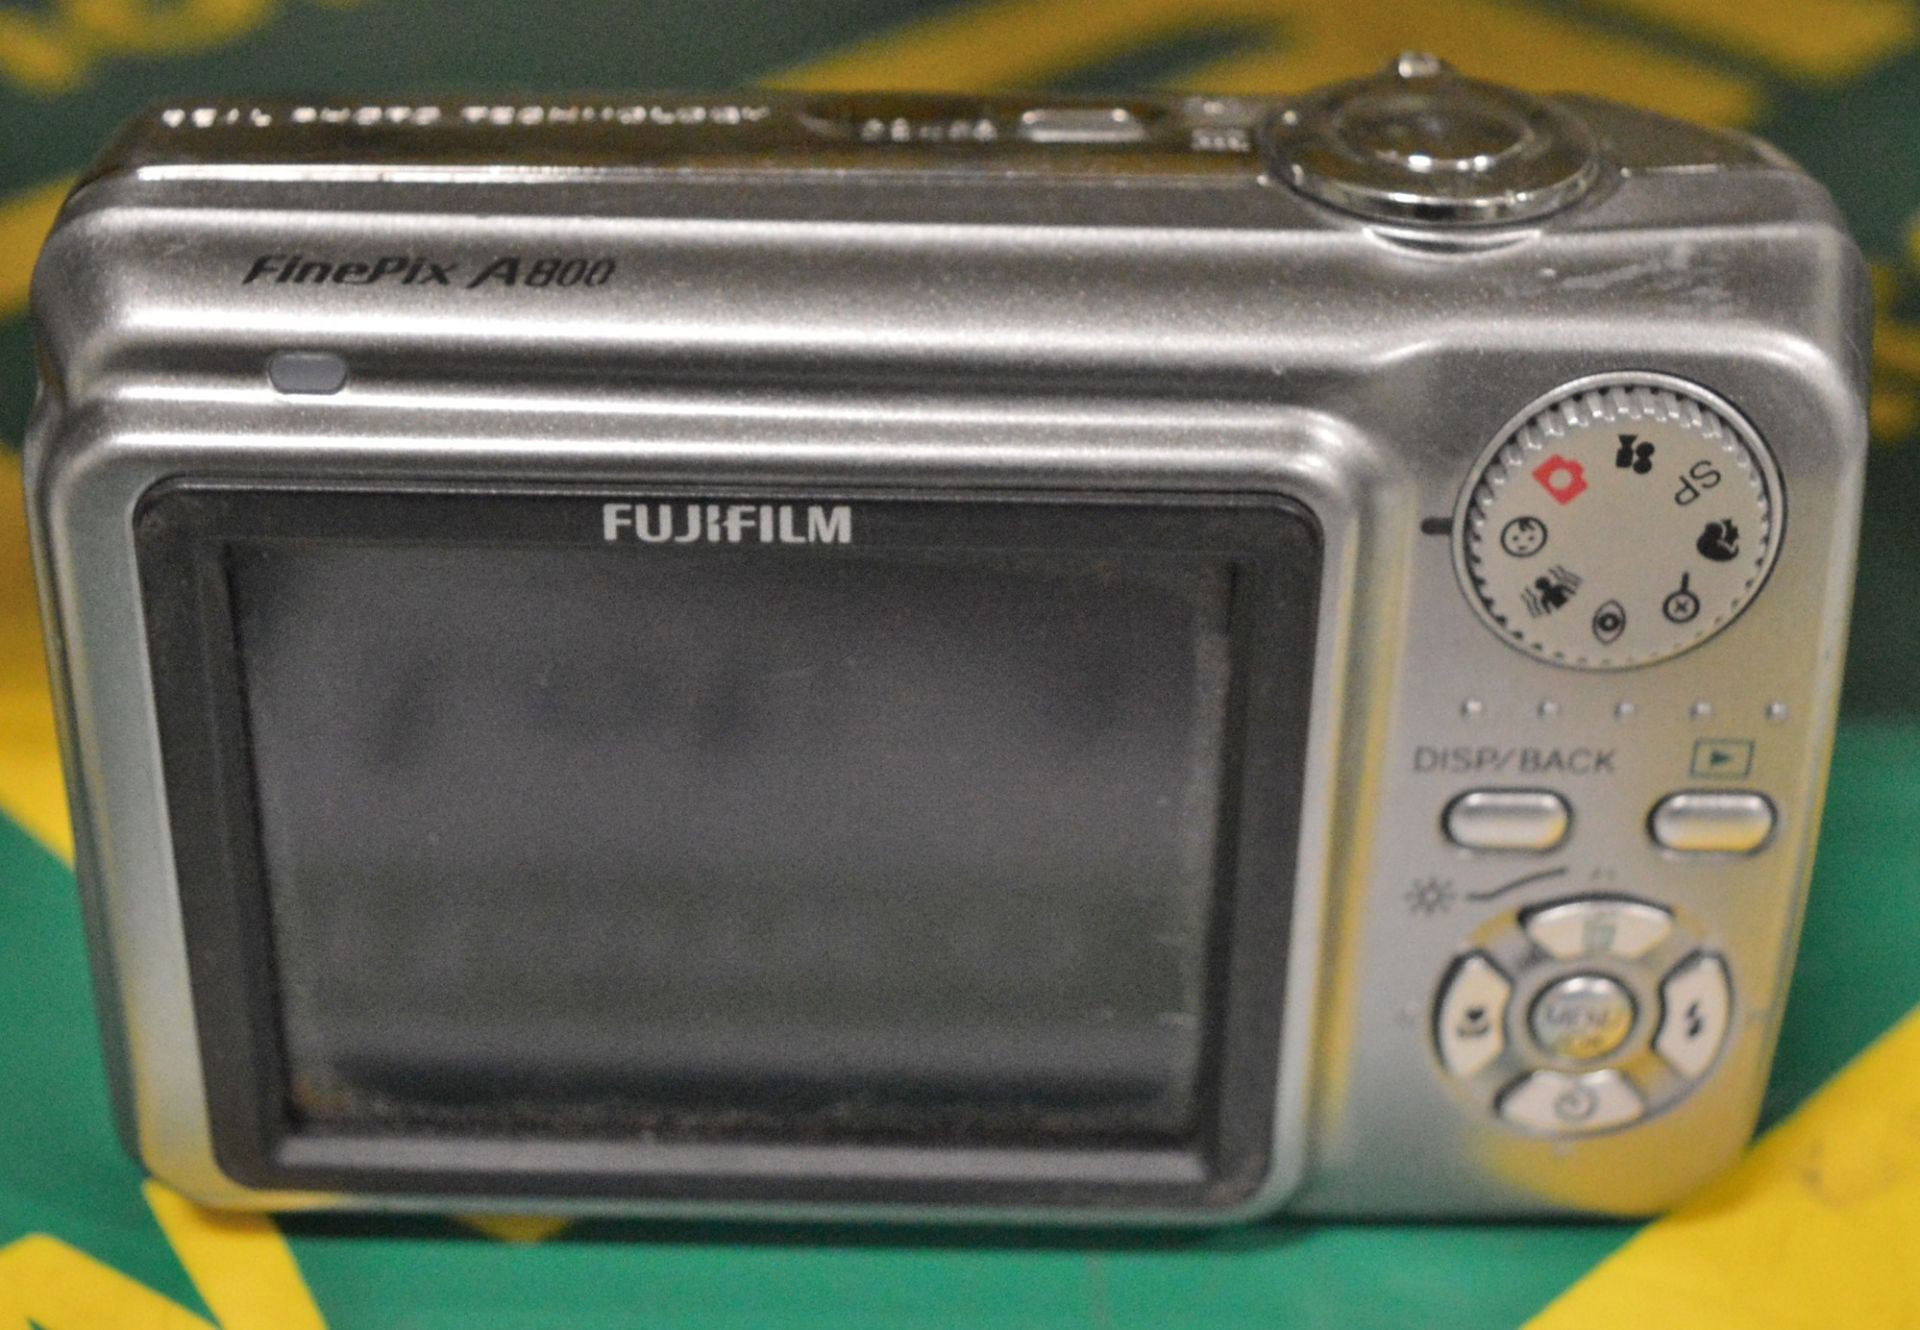 Fujifilm Finepix A800 - Image 2 of 2